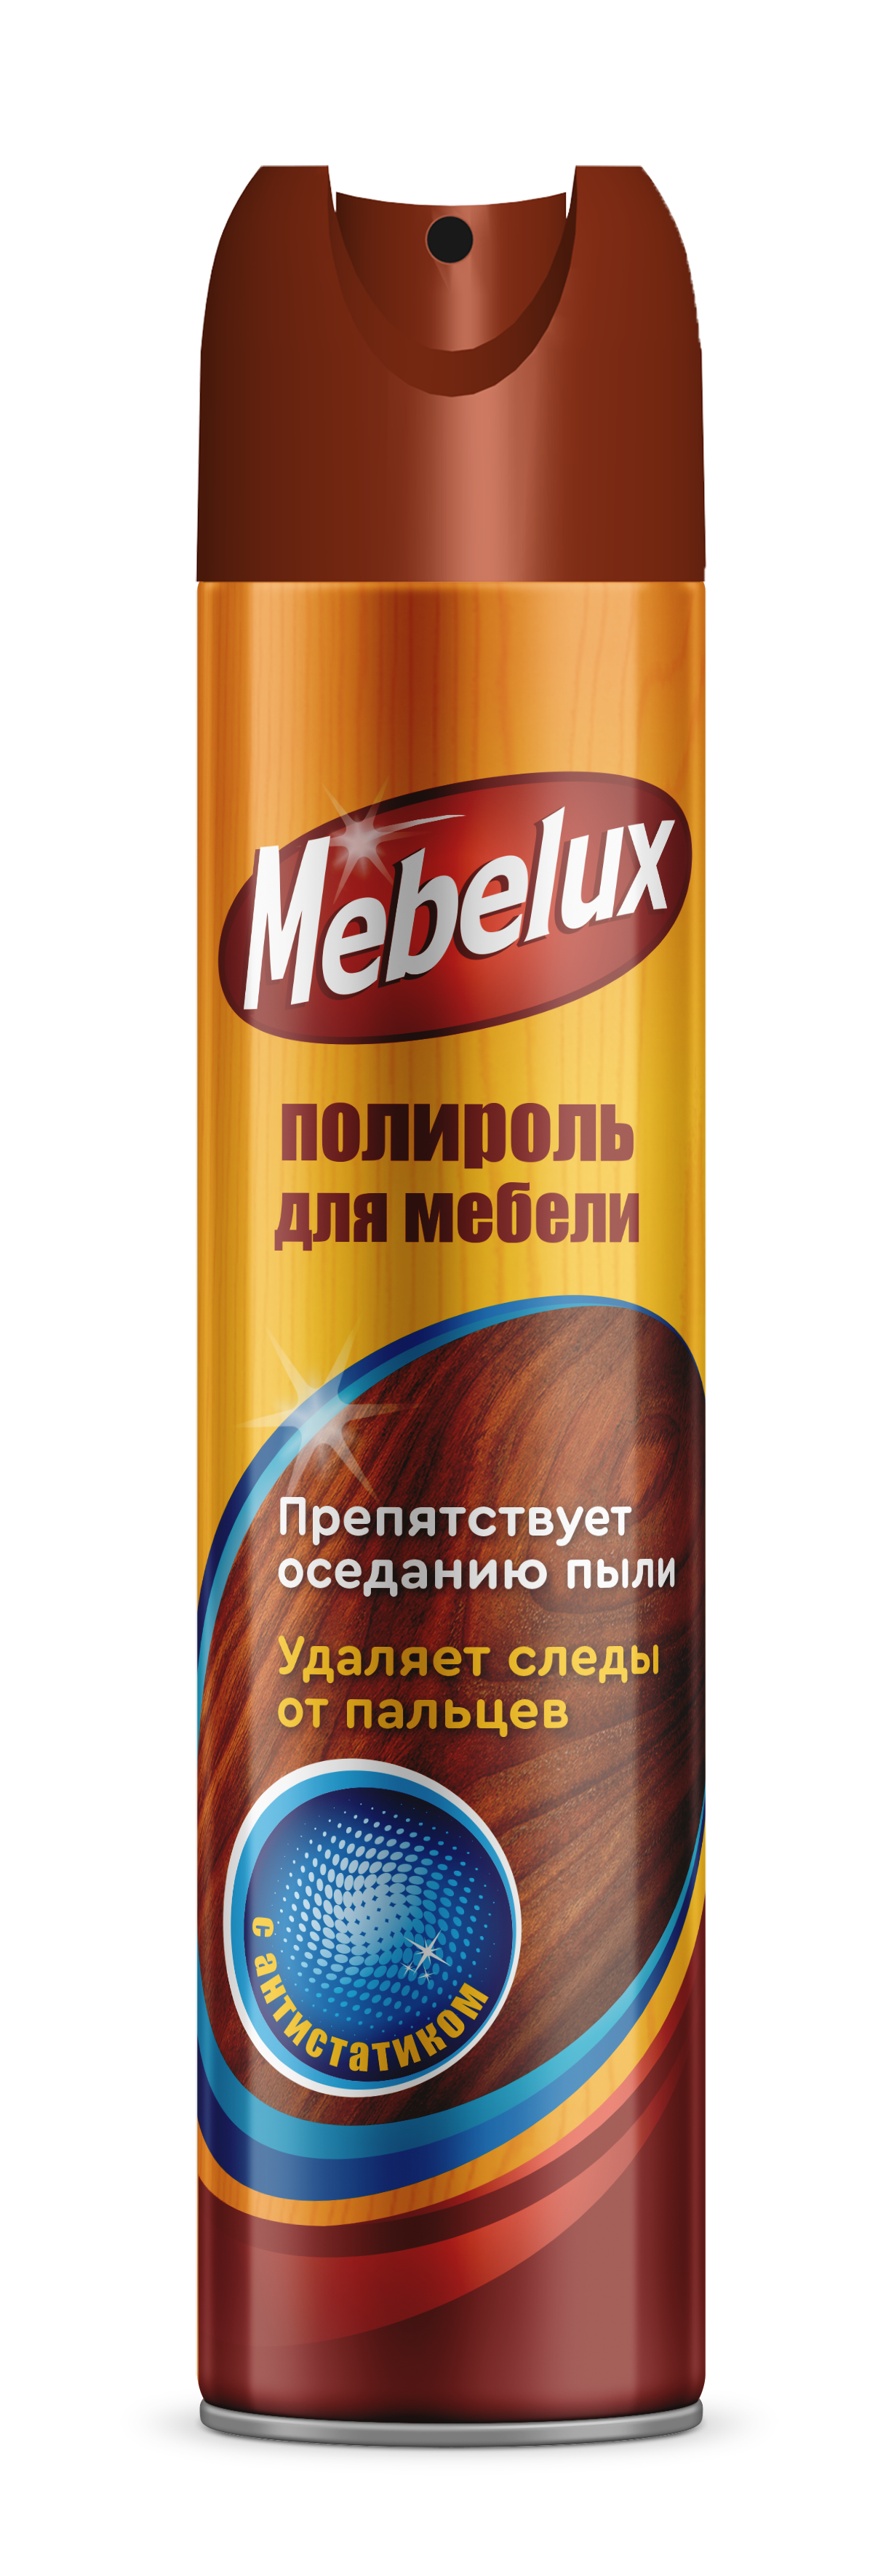 Mebelux_Полироль_С_Антистатиком_300